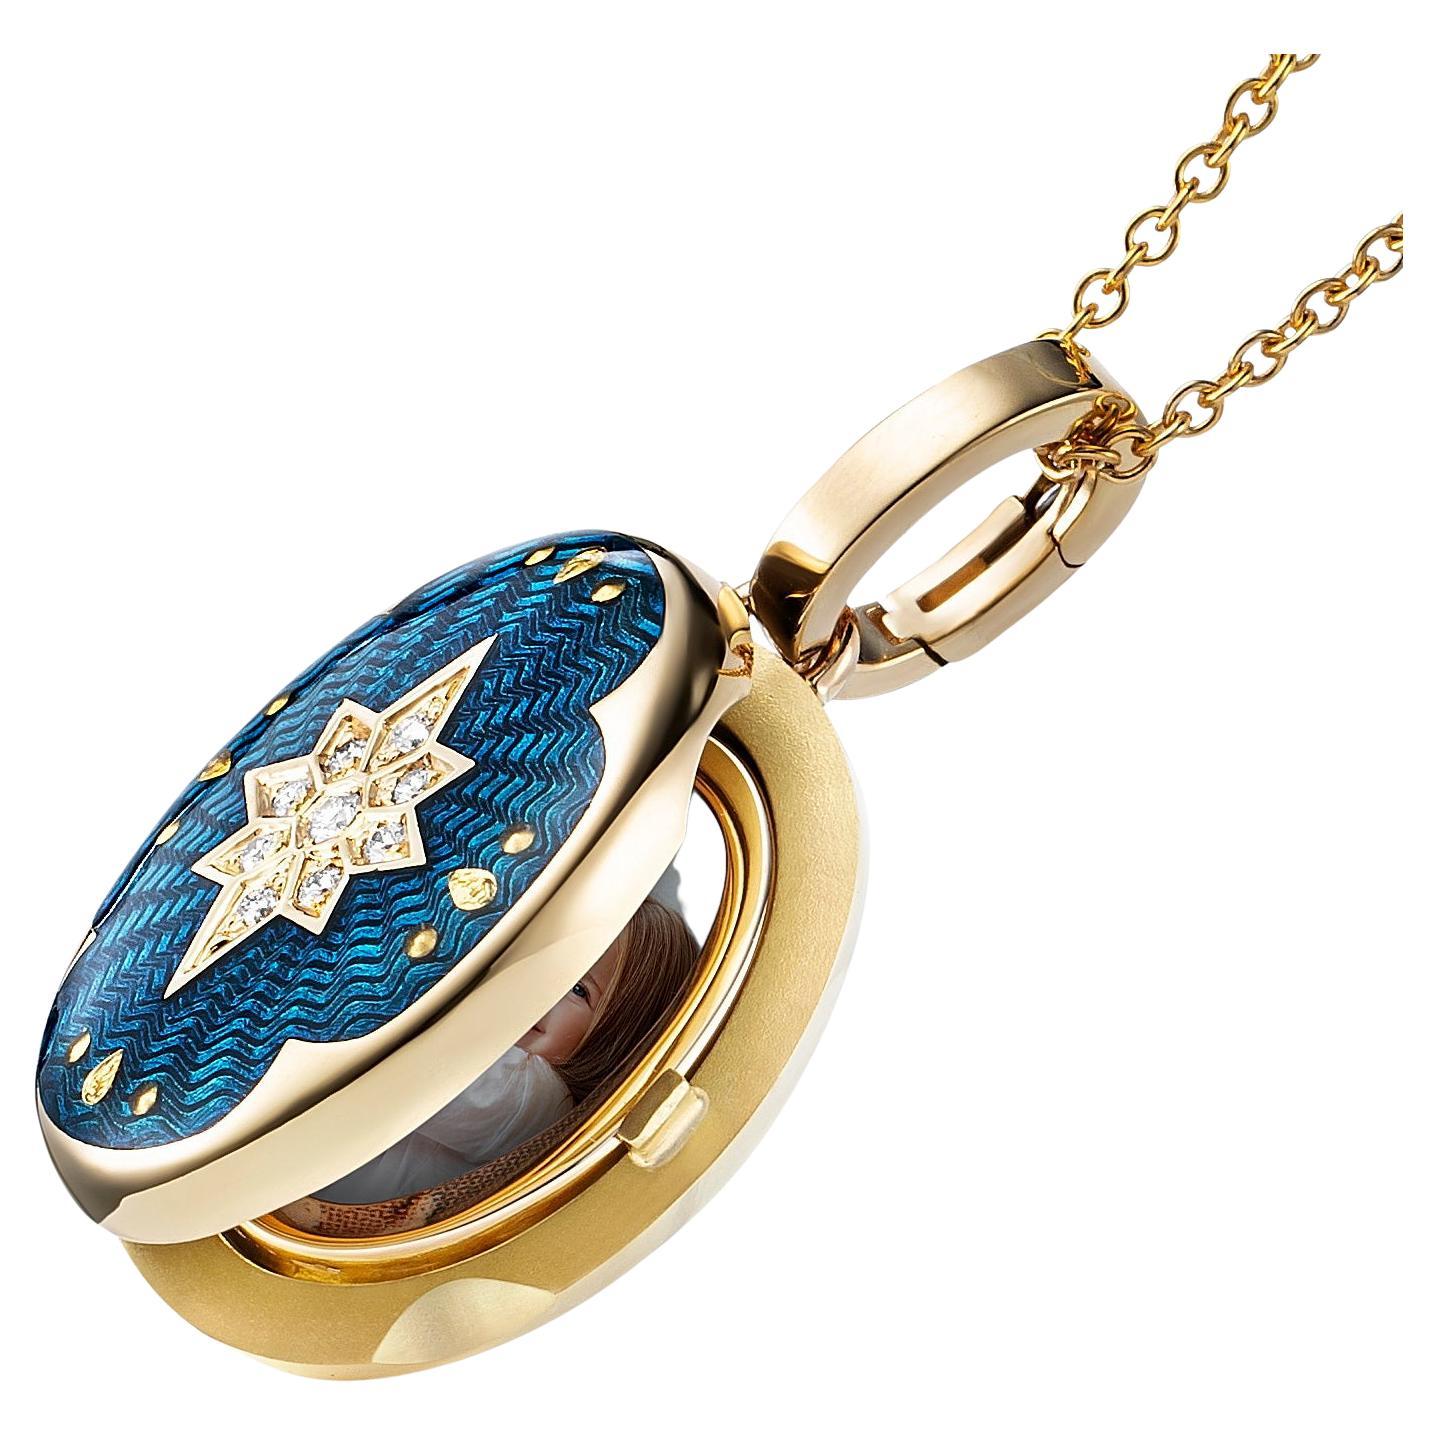 Ovales Victoria-Anhnger-Medaillon aus 18 Karat Gelbgold mit blauer Emaille und 9 Diamanten 0,07 Karat G VS